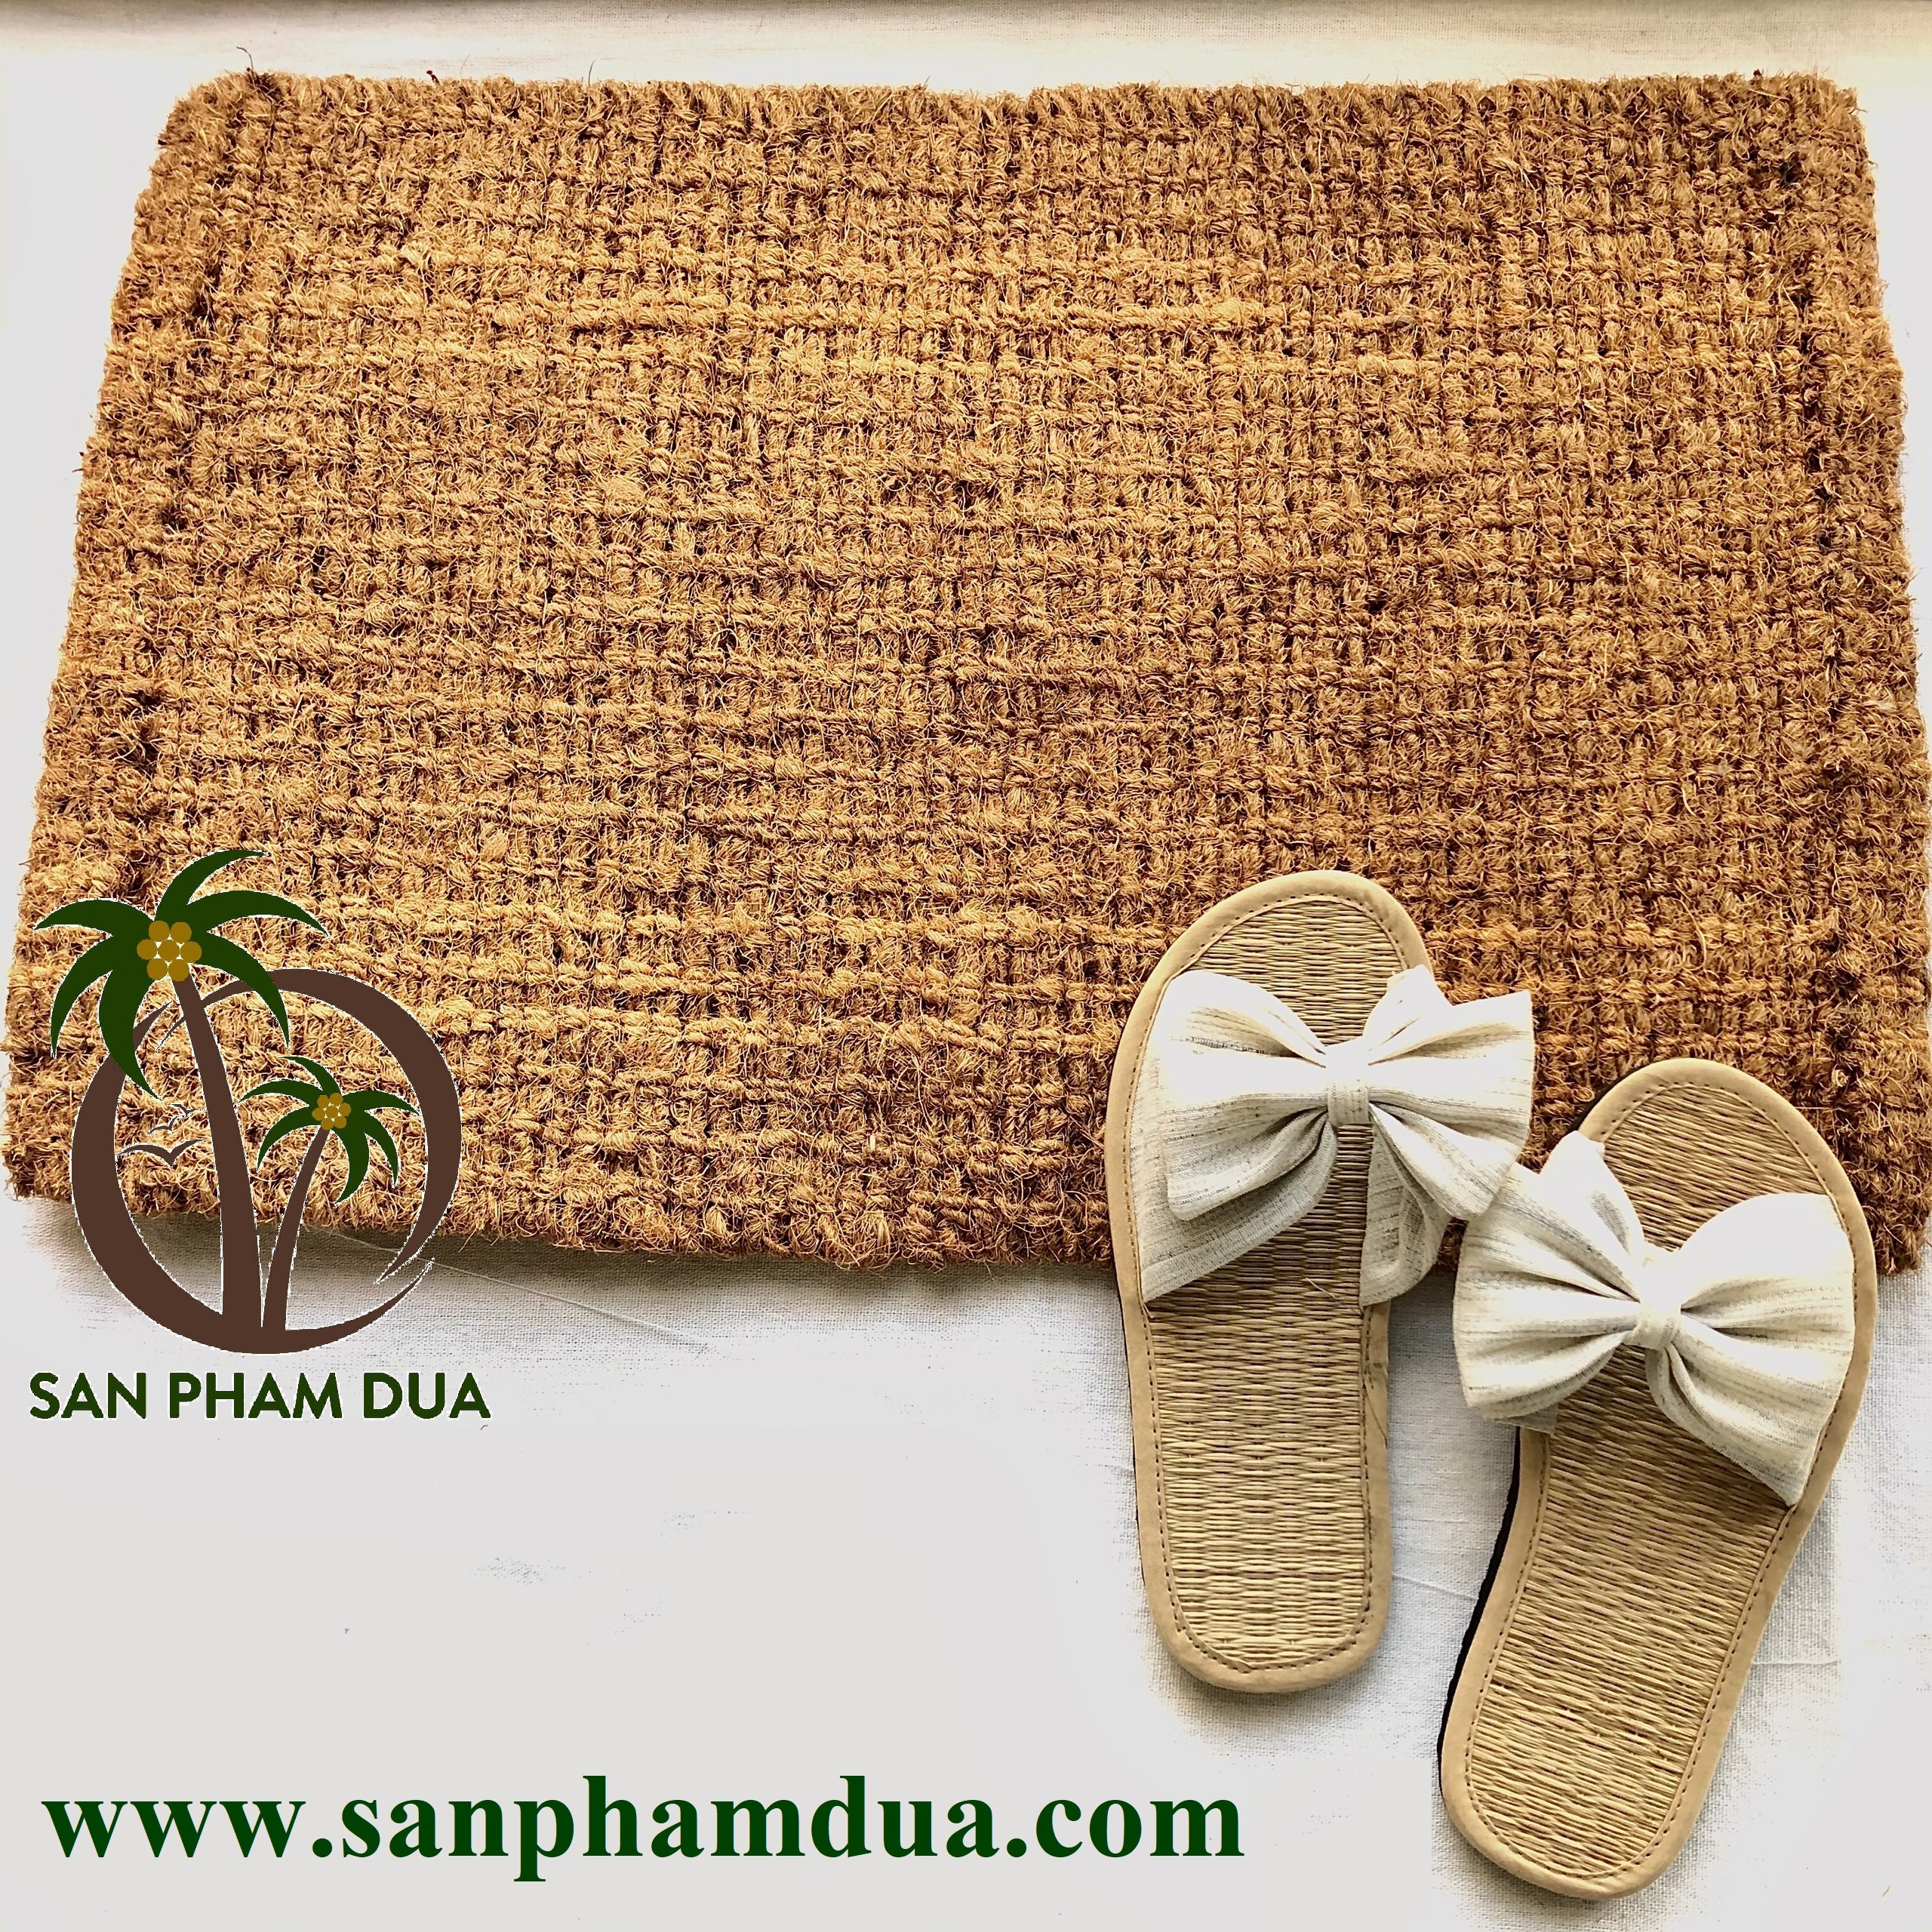 Thảm chùi chân bằng xơ dừa – Sản phẩm tự nhiên từ làng nghề dệt thảm xơ dừa